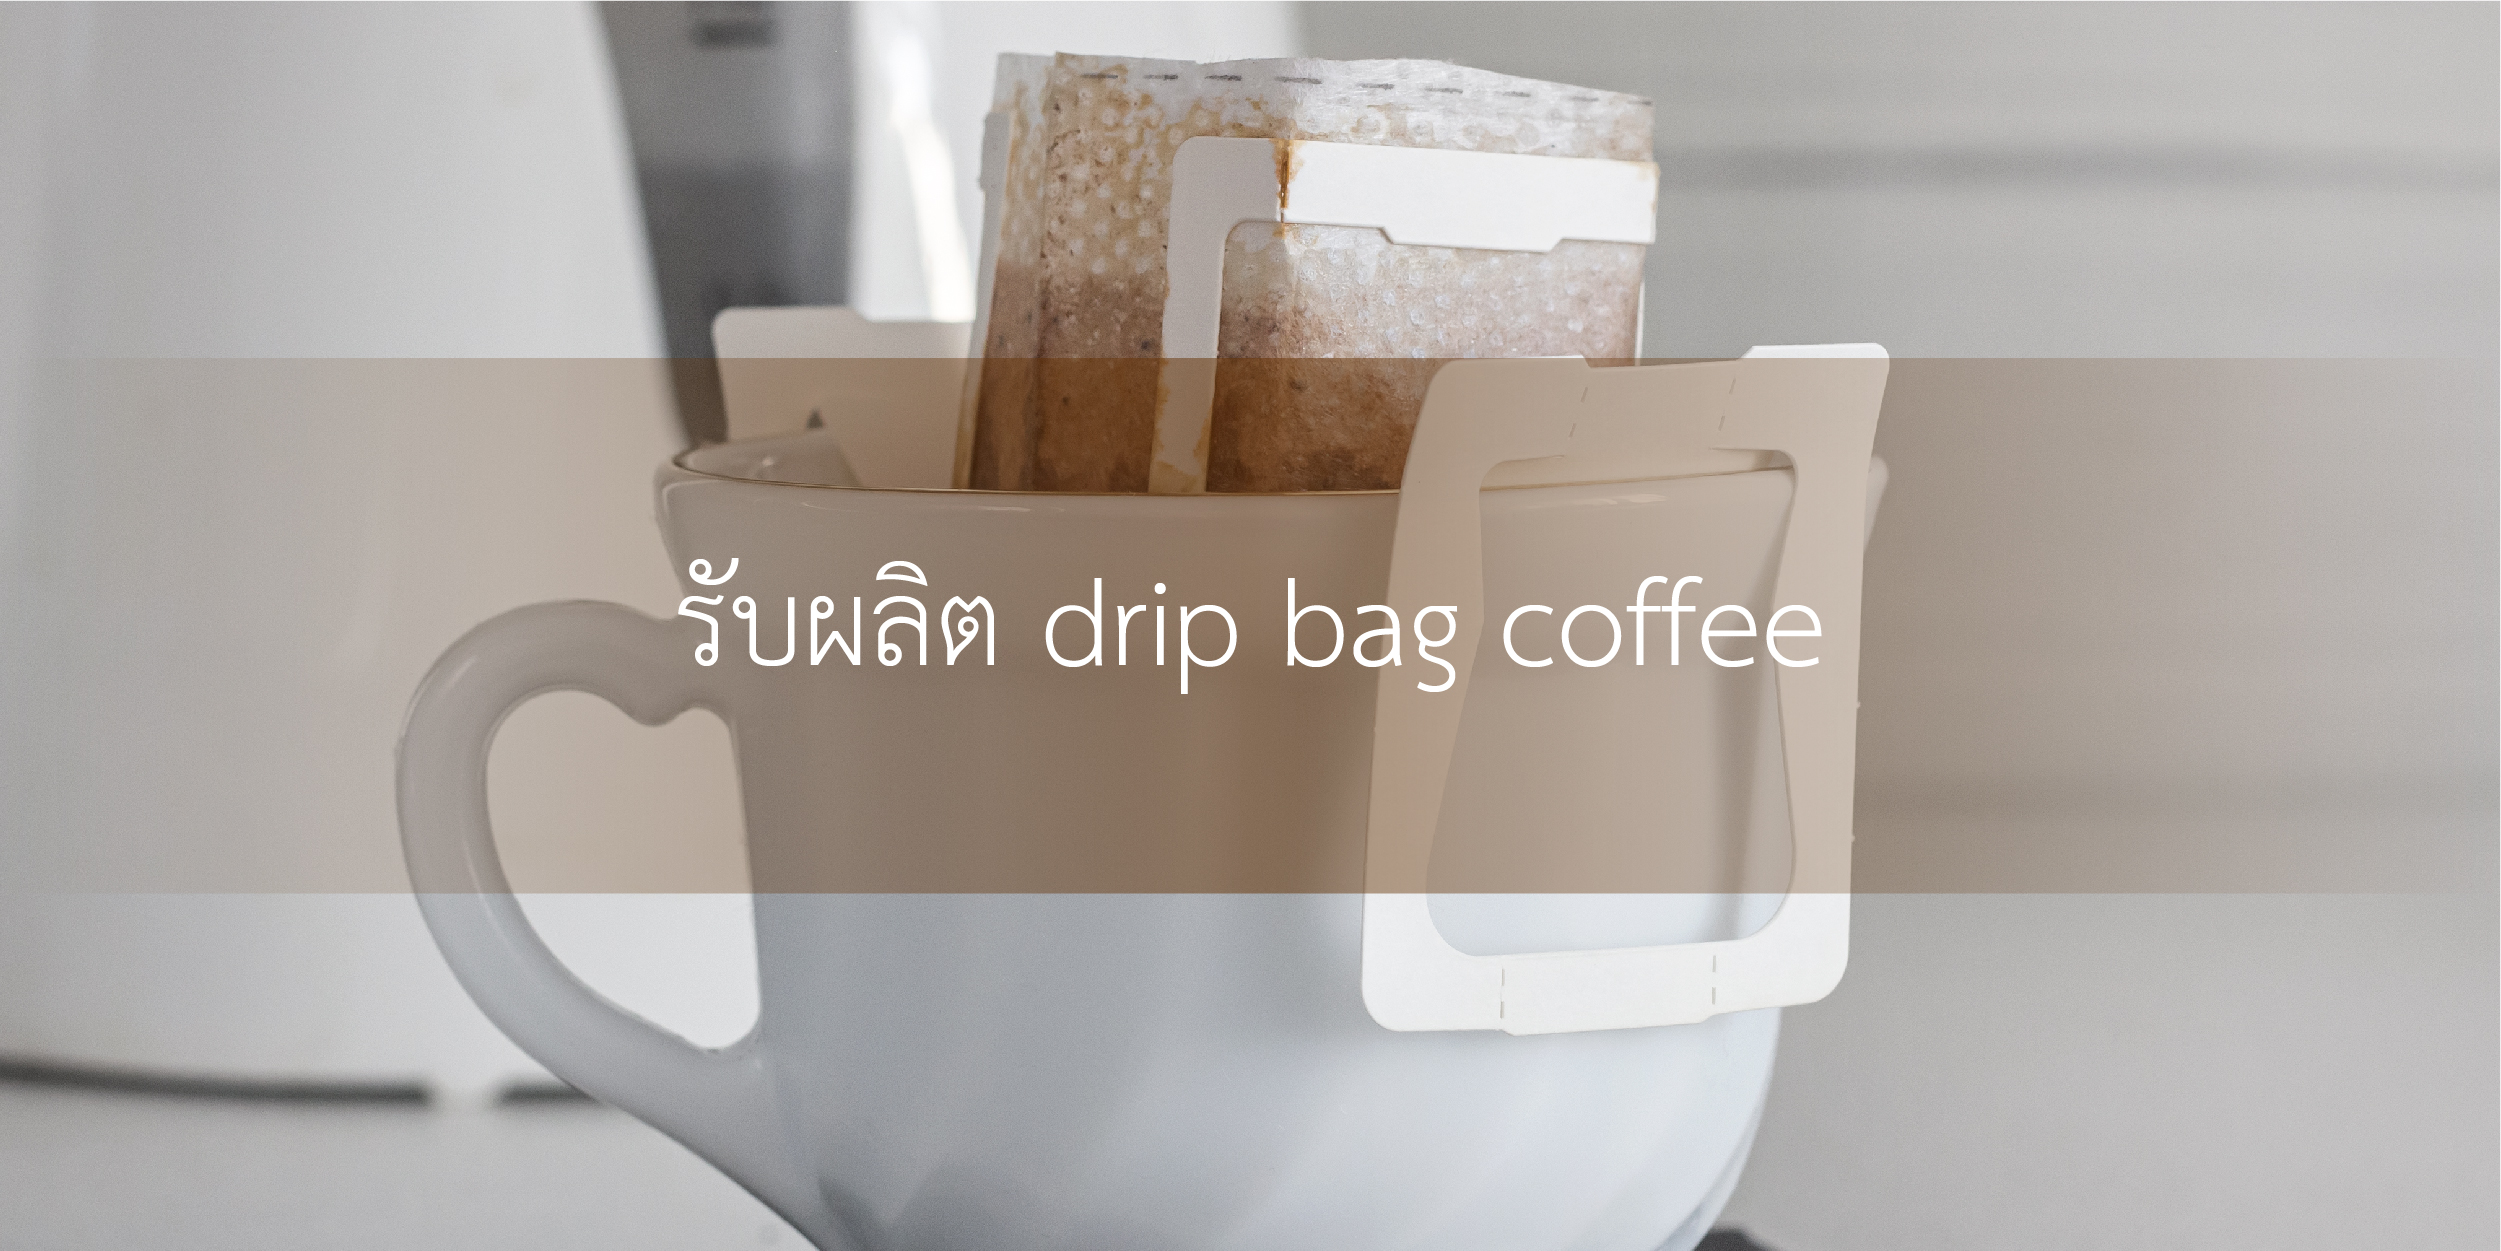 รับผลิต drip bag coffee-06